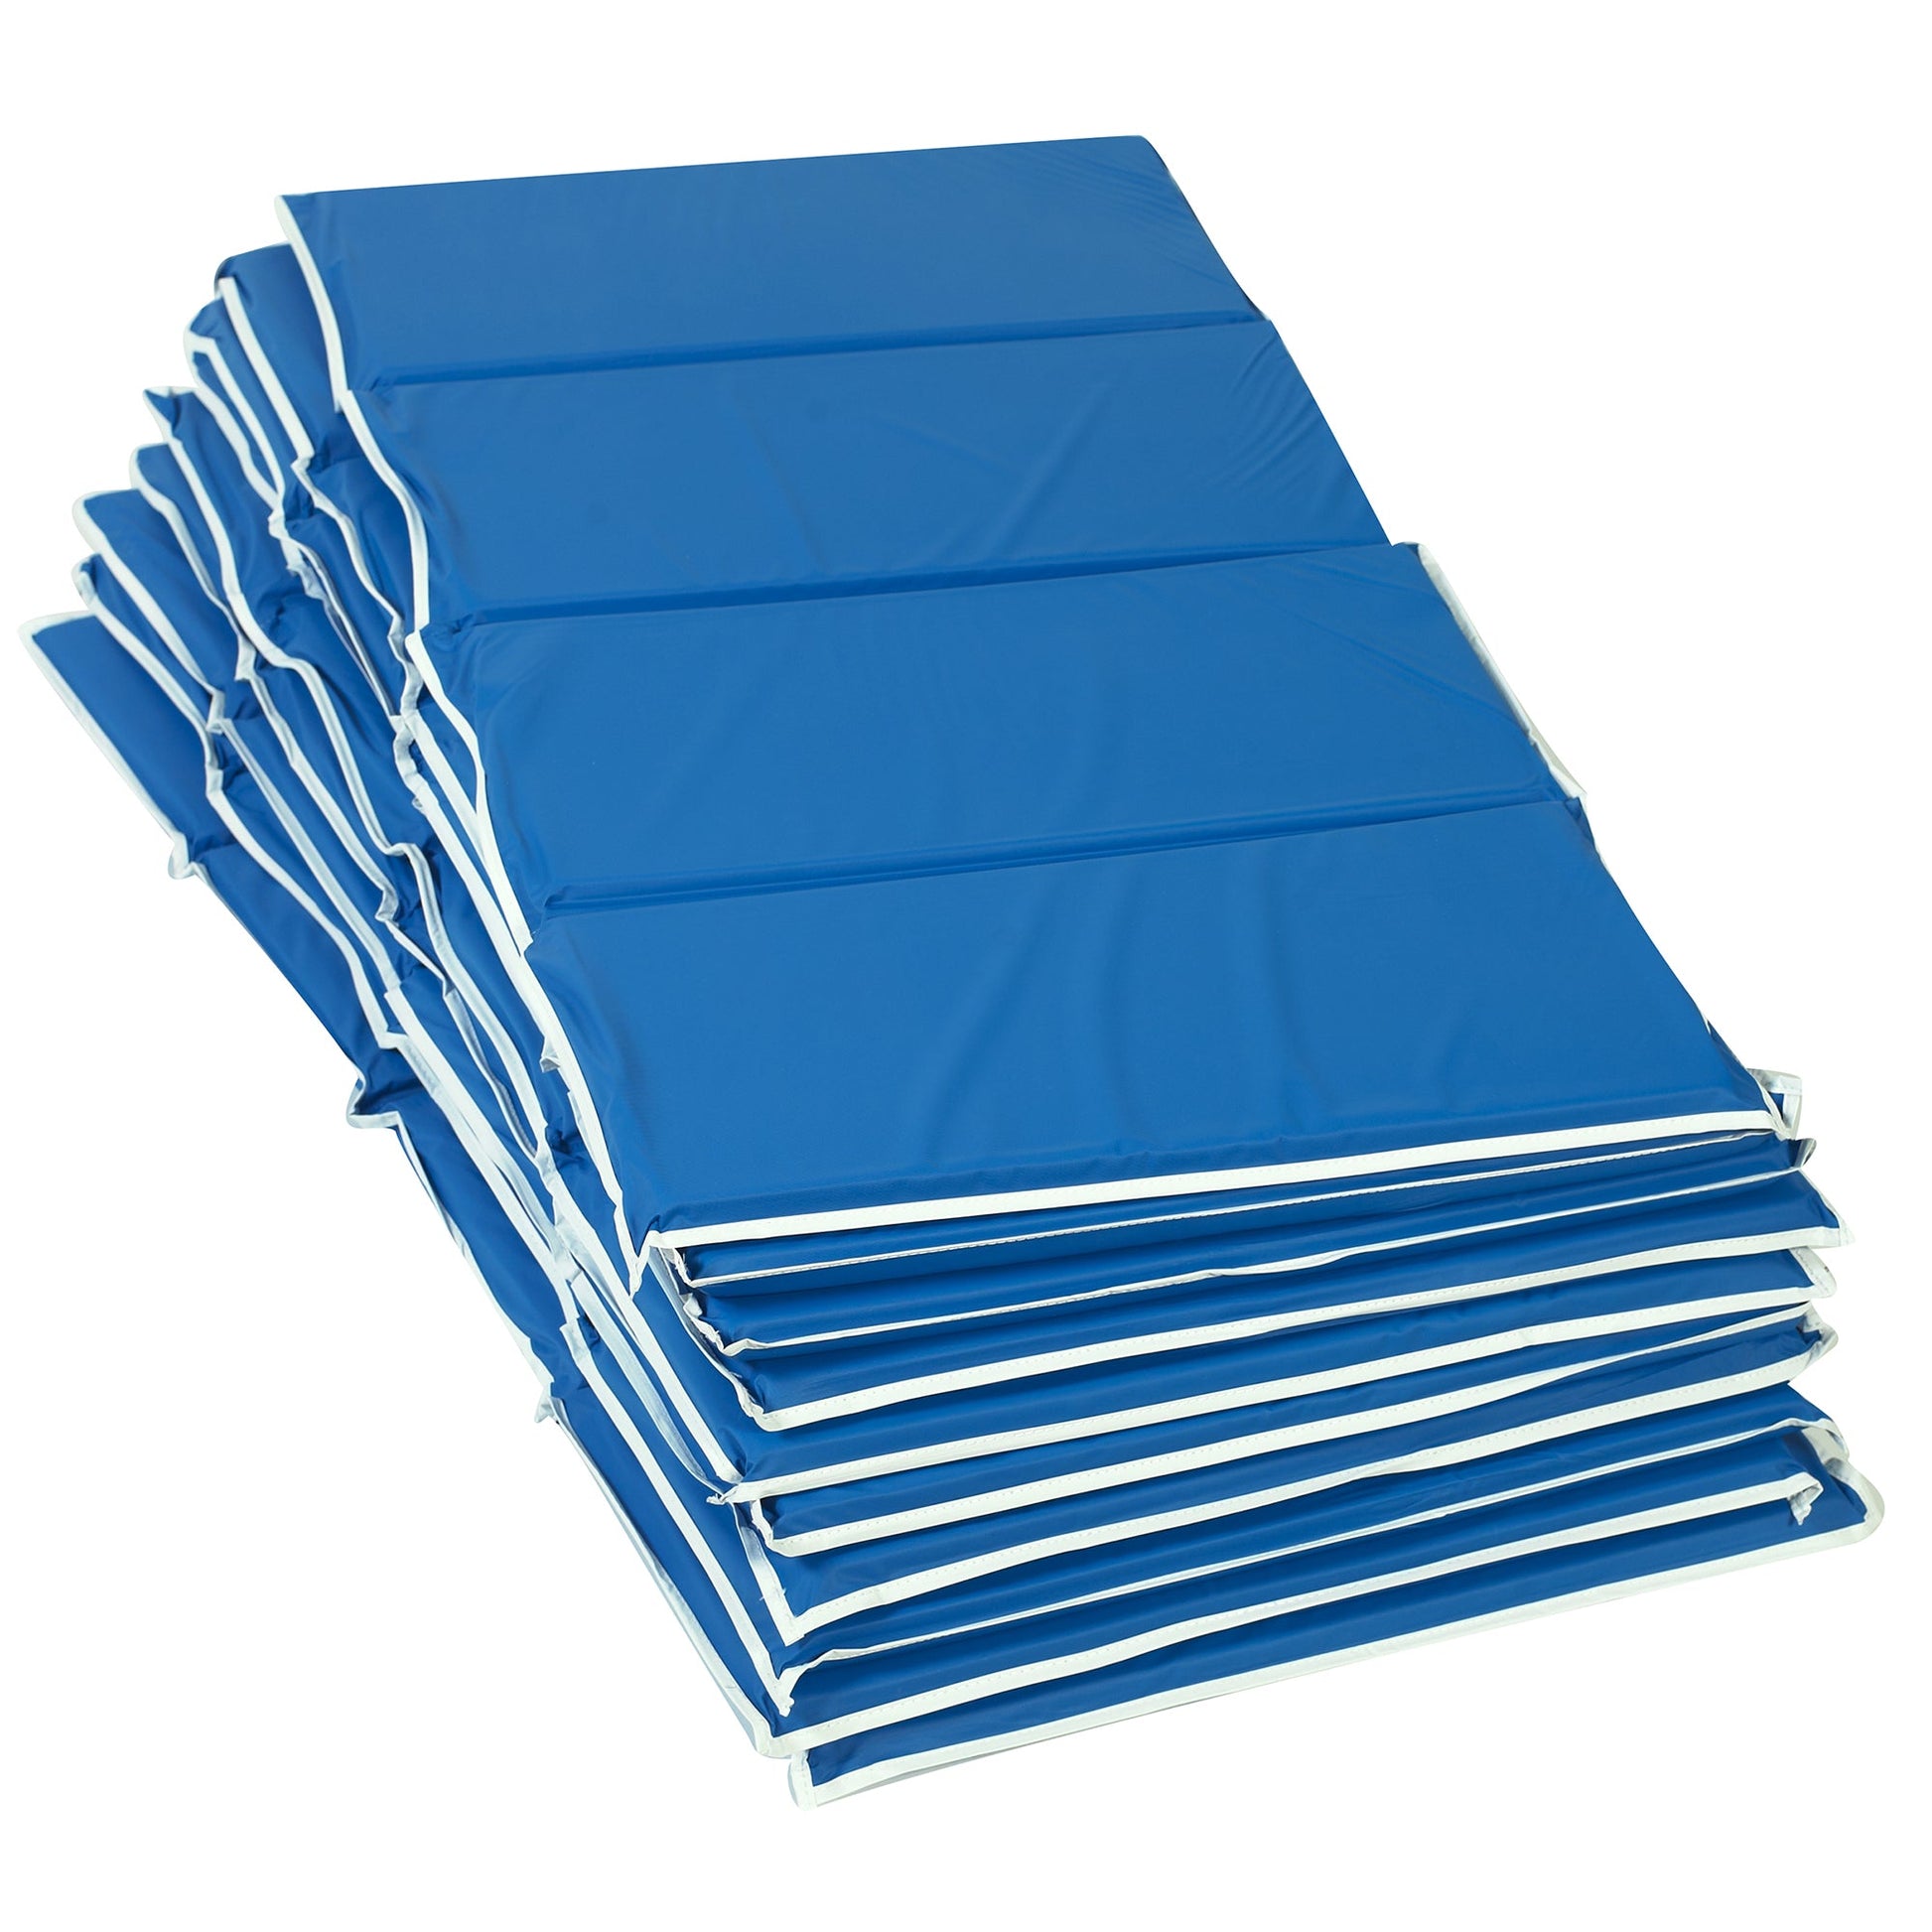 Children's Factory 1" Tough Duty Folding Rest Mat - Set of 10 - Blue (CF400-052) - SchoolOutlet